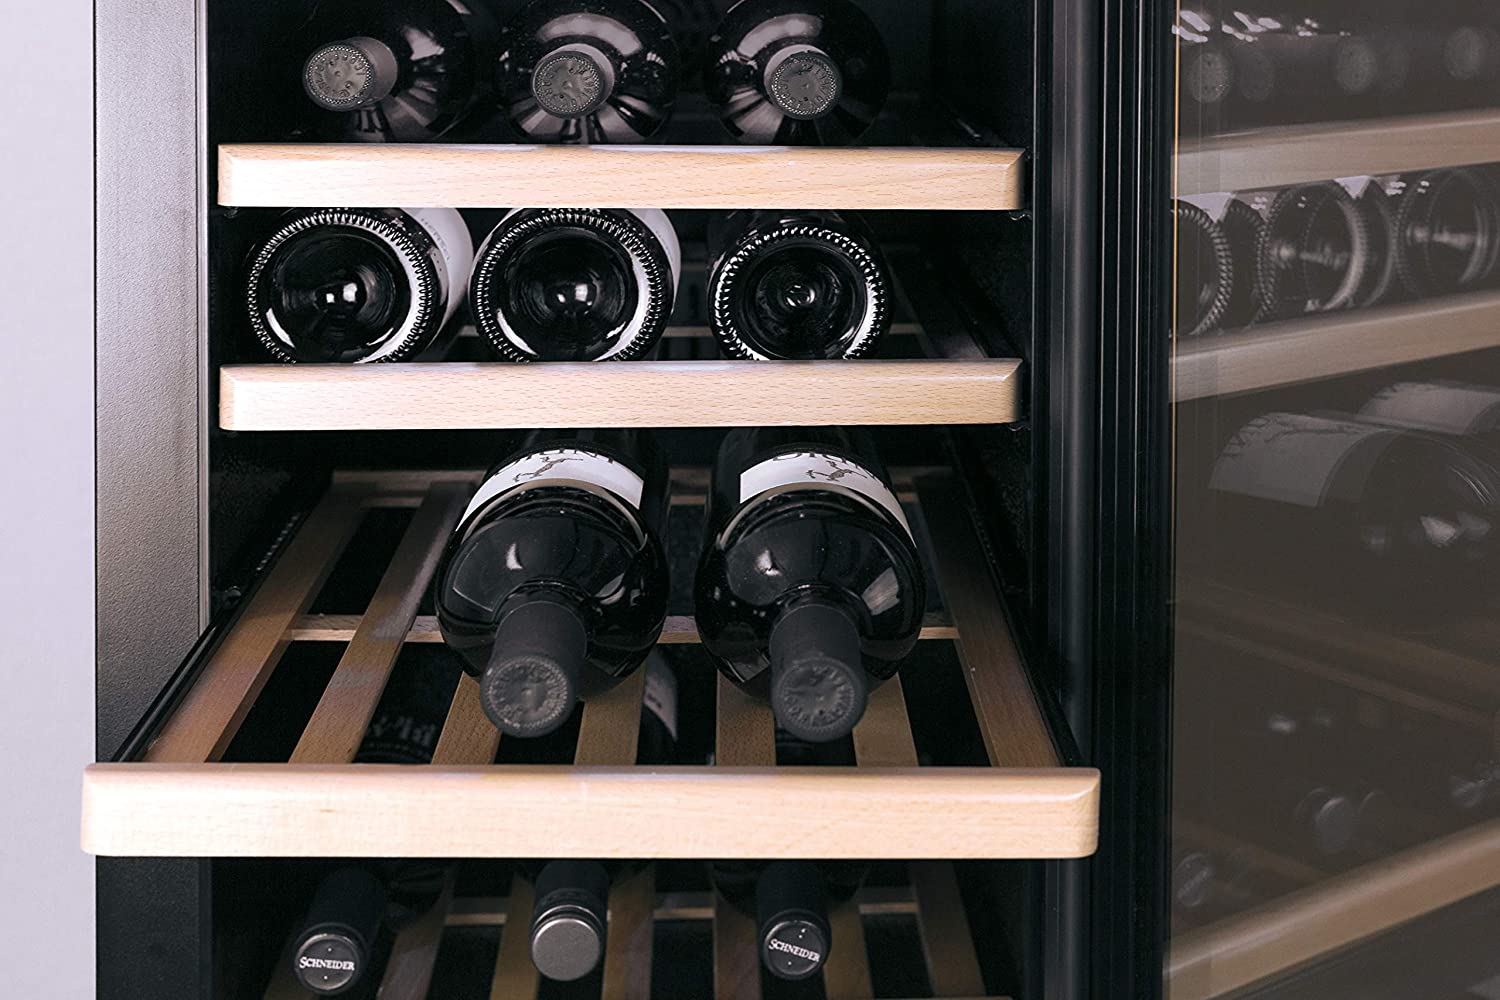 Thiết lập nhiệt độ phù hợp cho từng loại rượu vang khác nhau